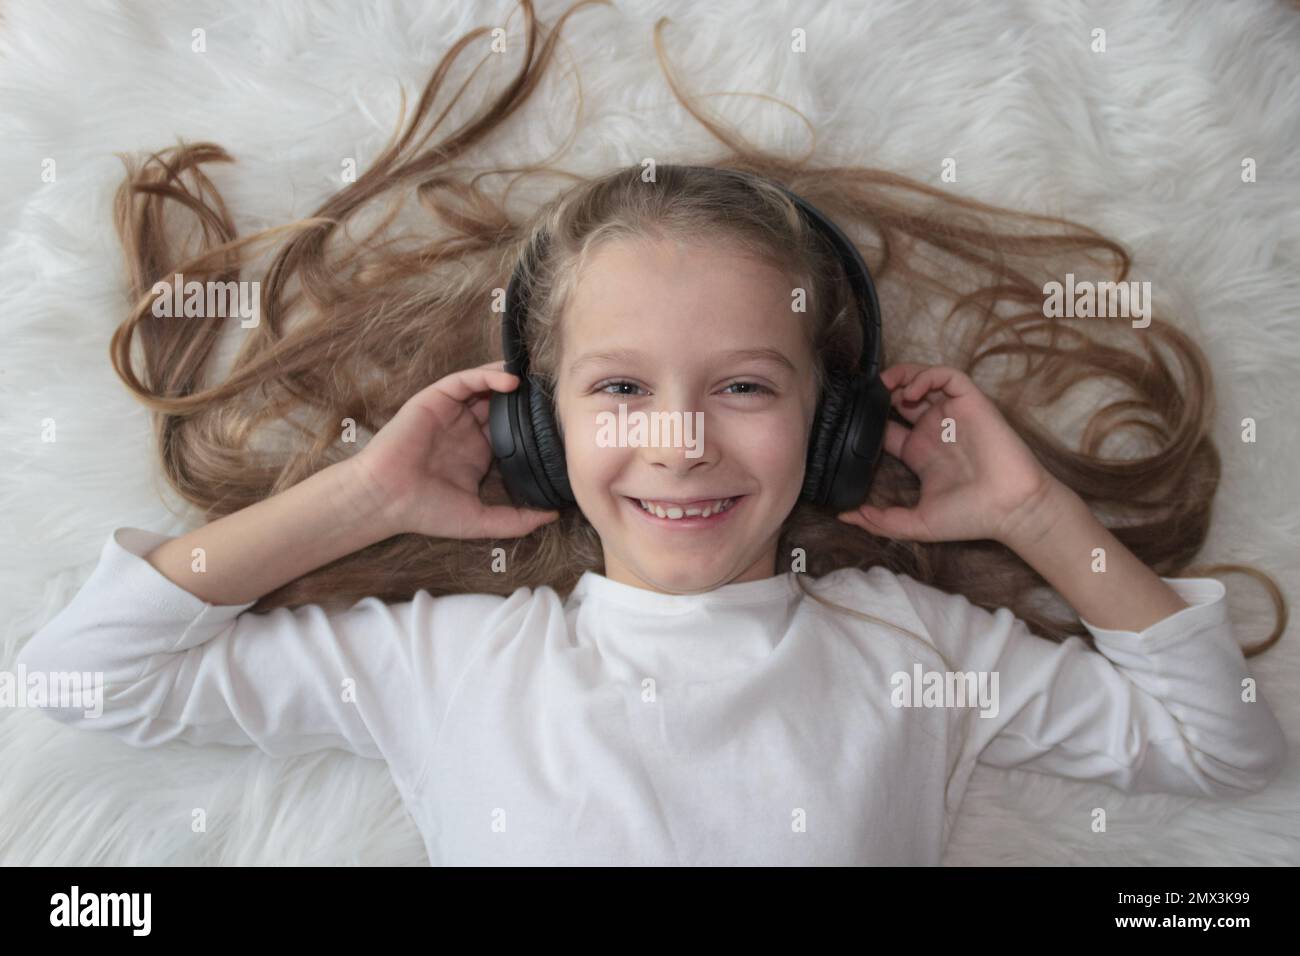 Kleines Mädchen mit kabellosen Kopfhörern auf einem weißen Pelzteppich Stockfoto